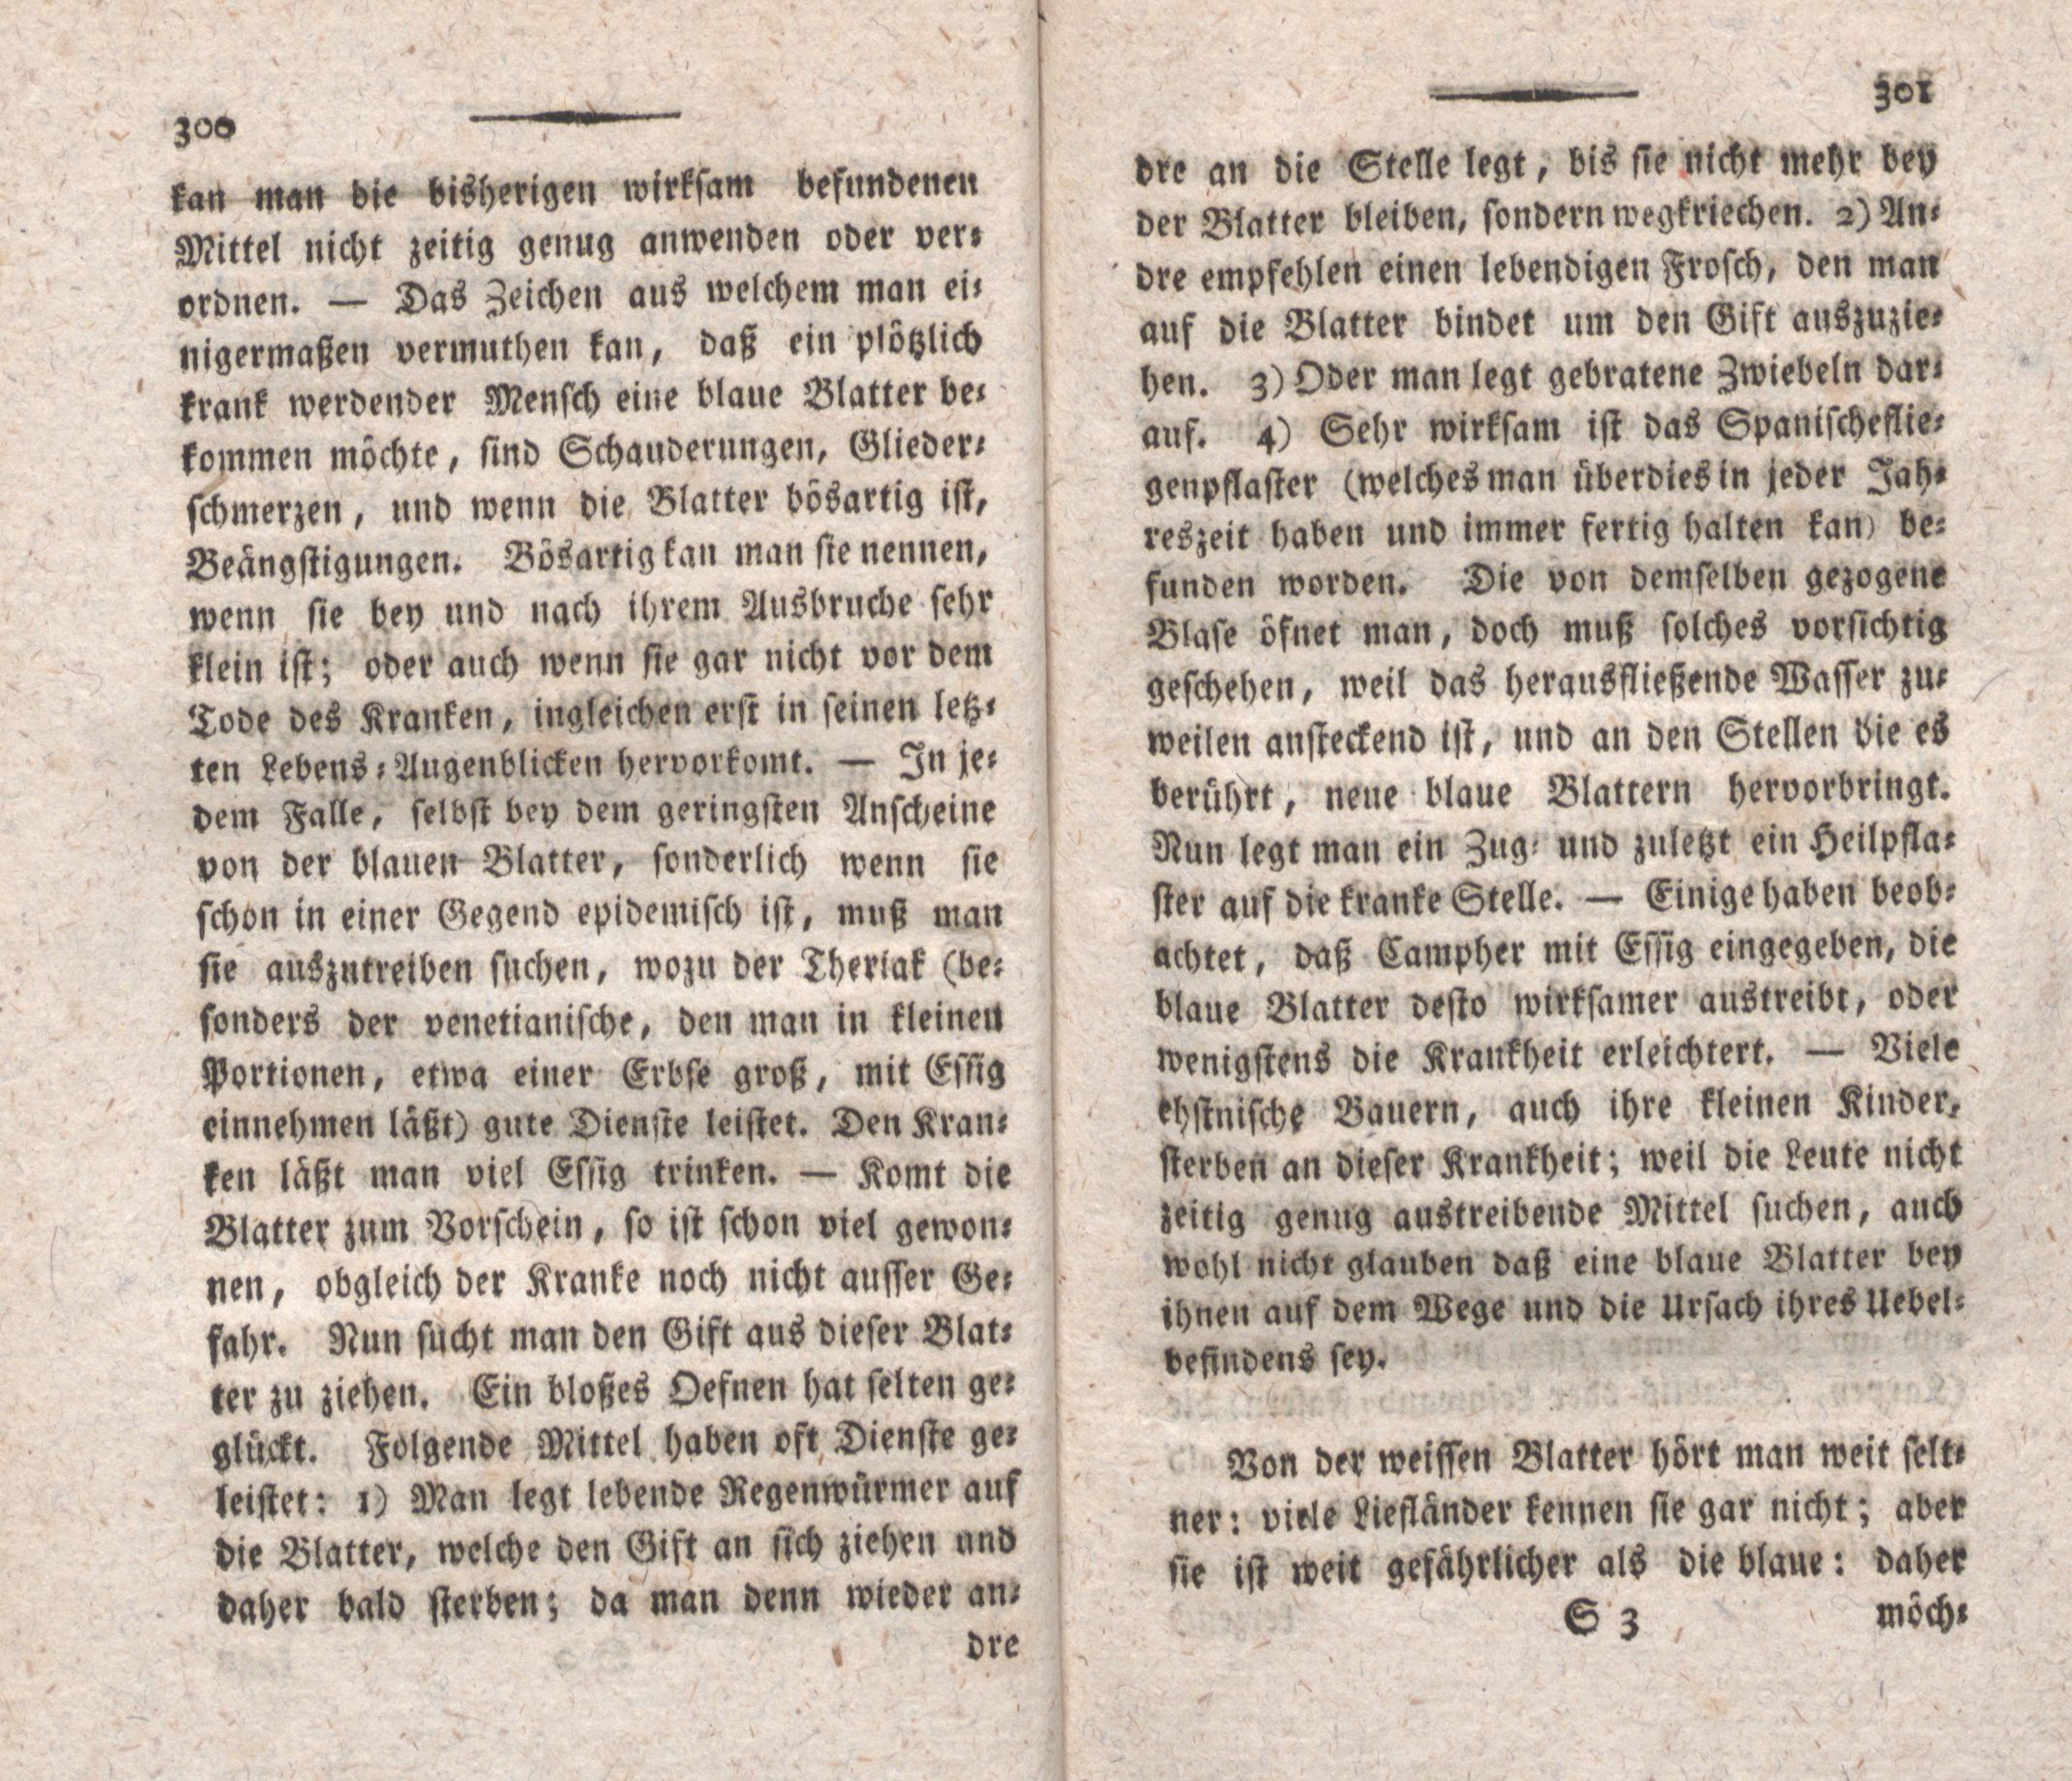 Einige in Liefland über die blaue- und über die weisse Blatter neuerlichst gesammelte Beobachtungen (1798) | 2. (300-301) Haupttext